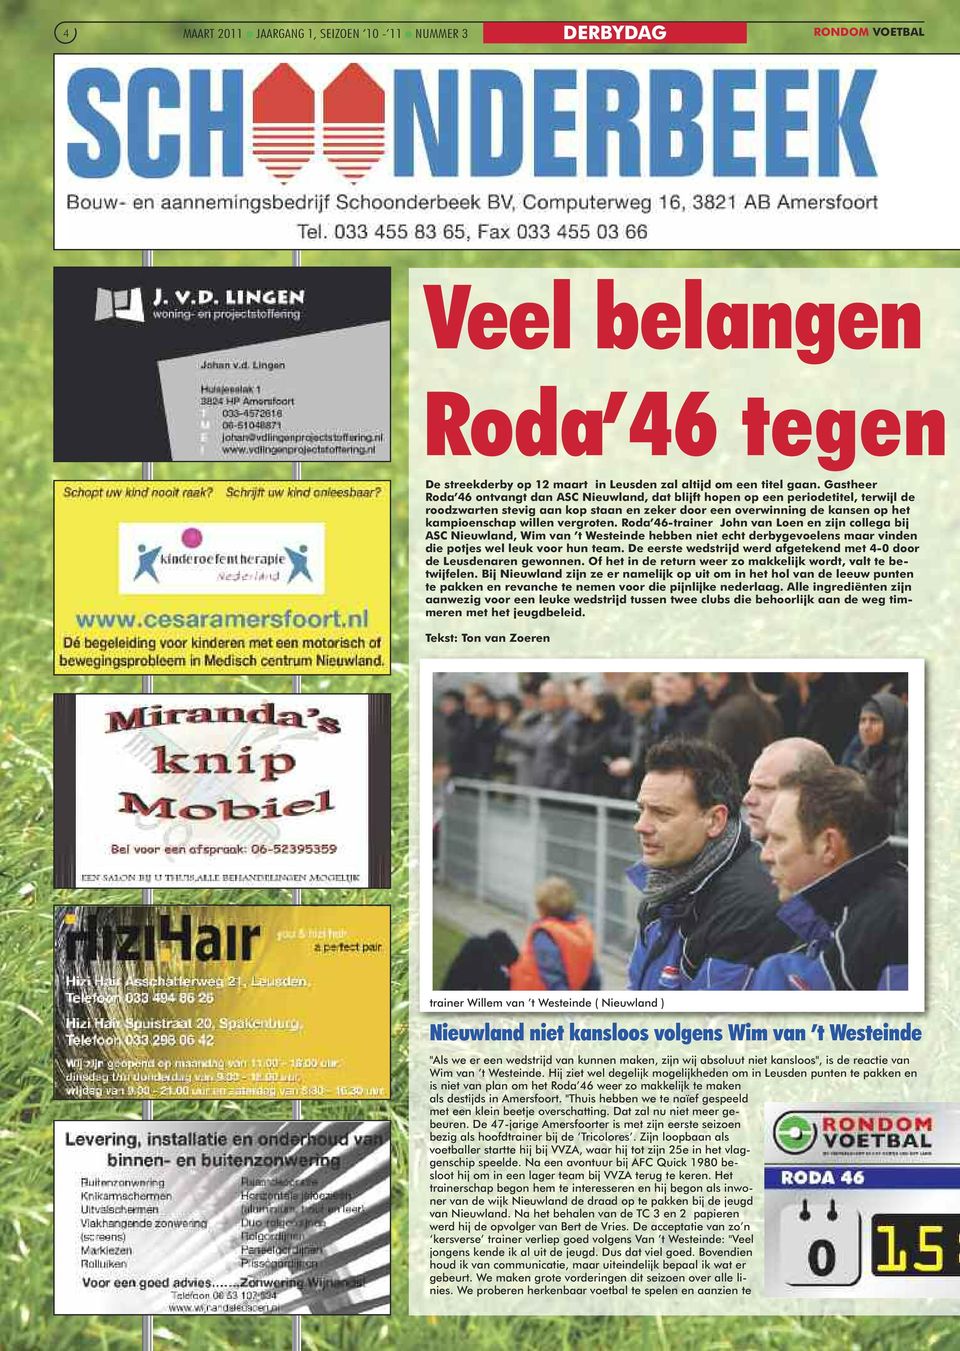 vergroten. Roda 46-trainer John van Loen en zijn collega bij ASC Nieuwland, Wim van t Westeinde hebben niet echt derbygevoelens maar vinden die potjes wel leuk voor hun team.